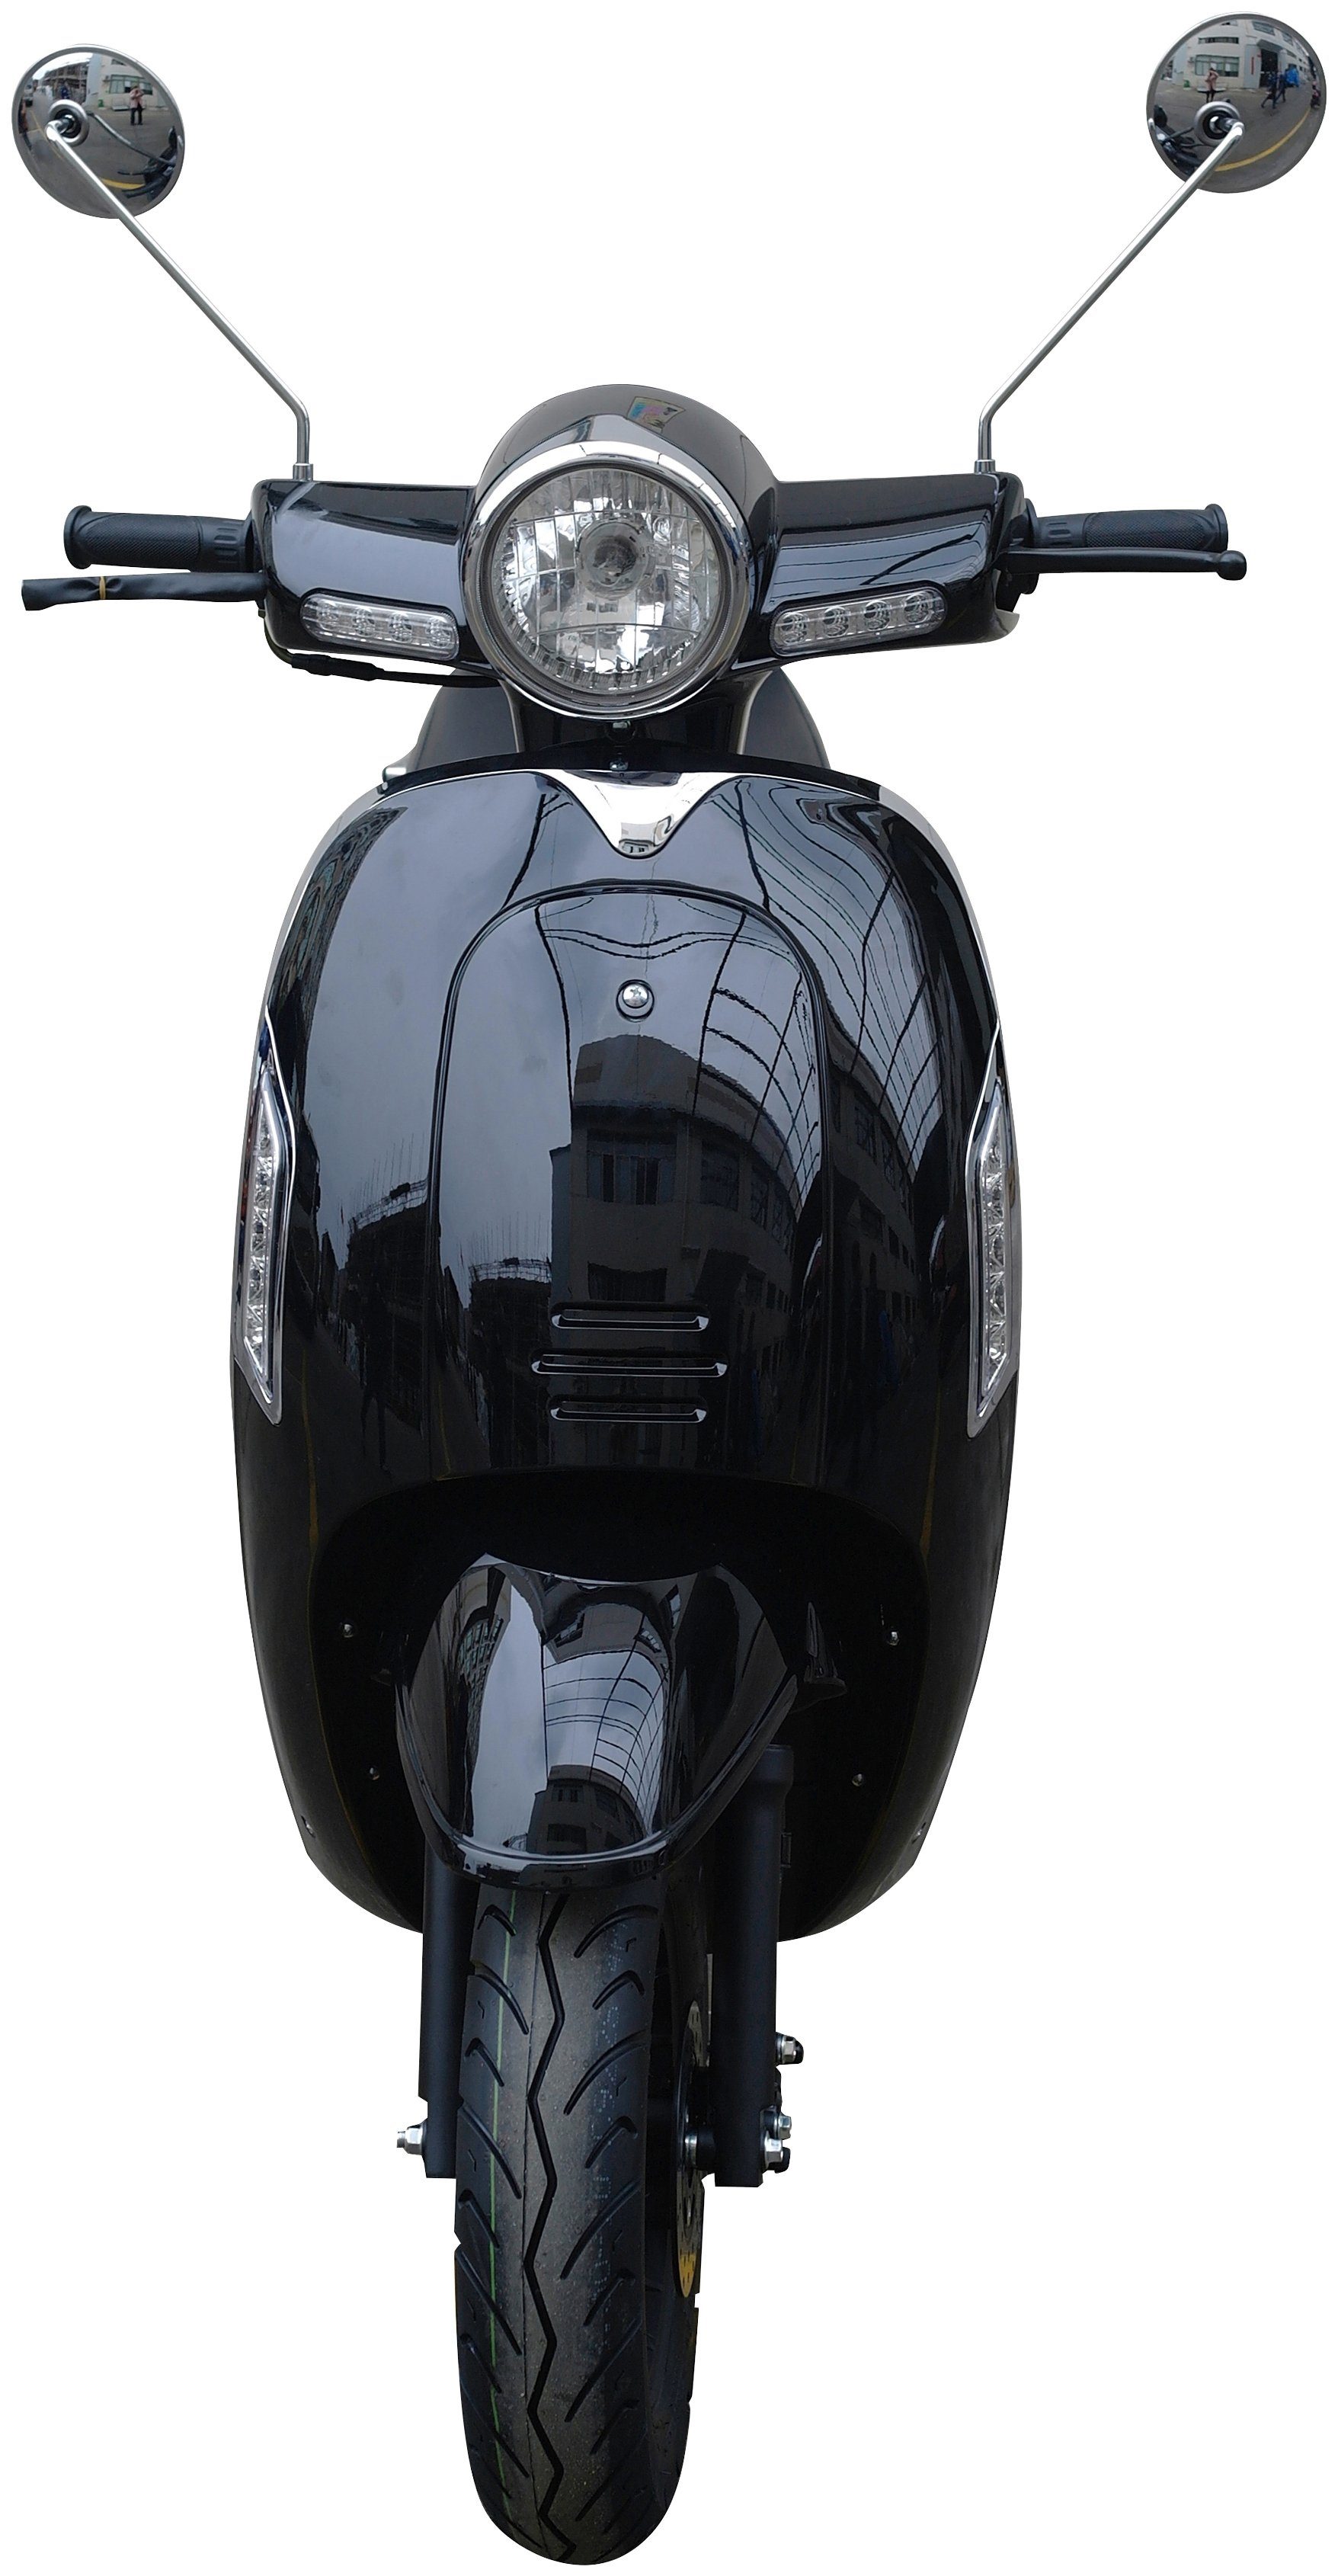 GT UNION 50 ccm, 5, 45 Euro für km/h, Verbrauch Topmoderne, elektronische Massimo, Einspritzanlage (EFI) Motorroller weniger